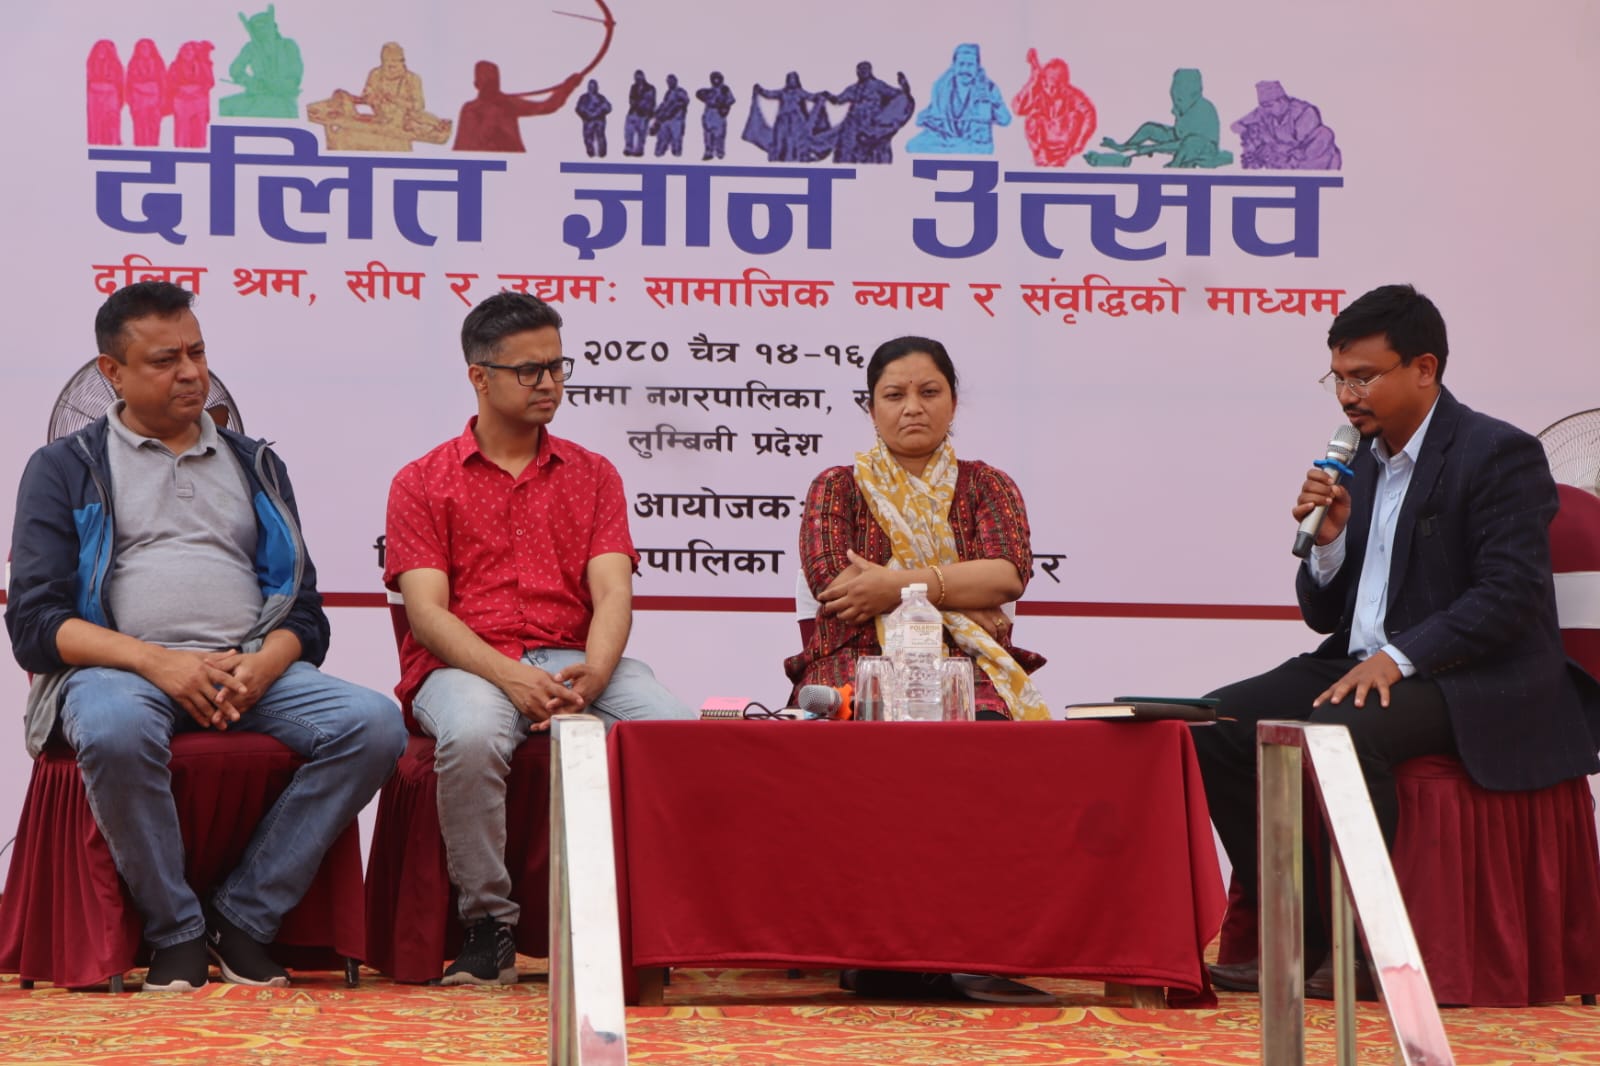 दलित ज्ञान उत्सवः बुटवलमा तीन दिन दलित समुदायका मुद्दामा बहस